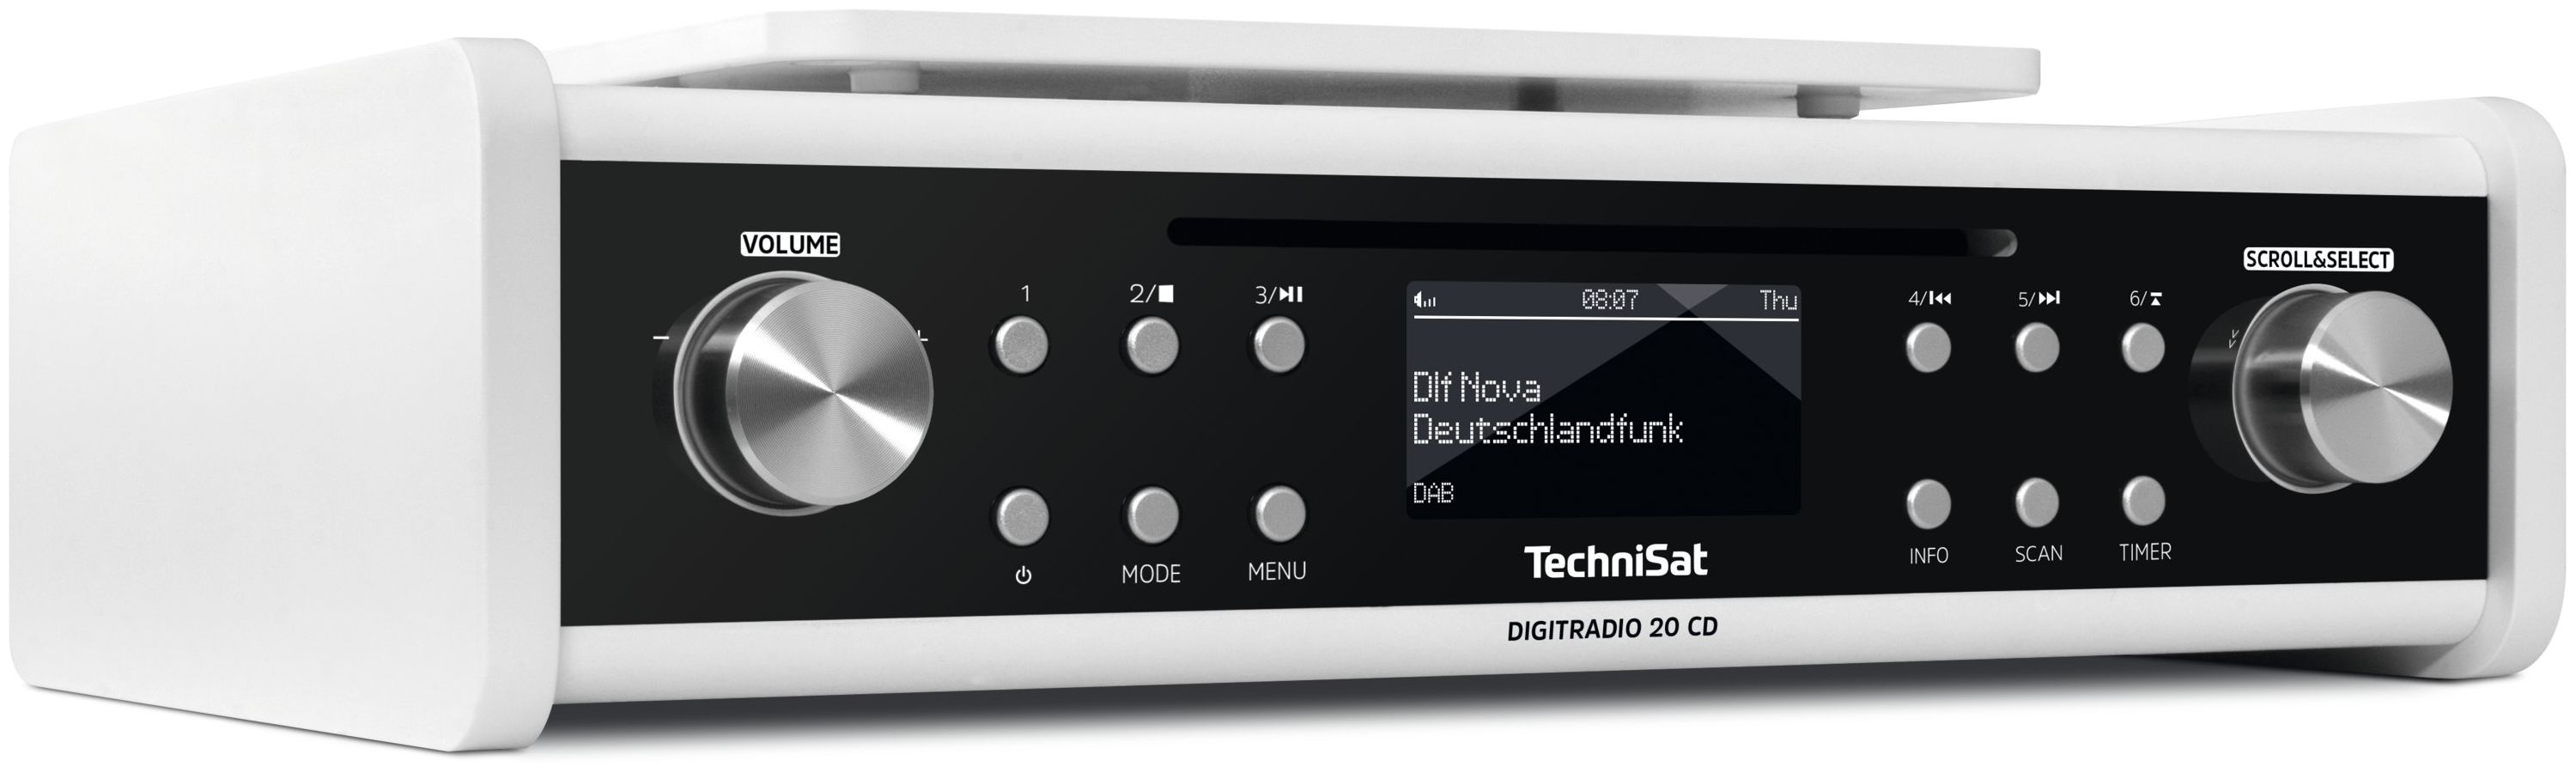 TechniSat DigitRadio 20CD DAB, DAB+, FM, Persönlich UHF, UKW von (Weiß) expert Technomarkt Radio